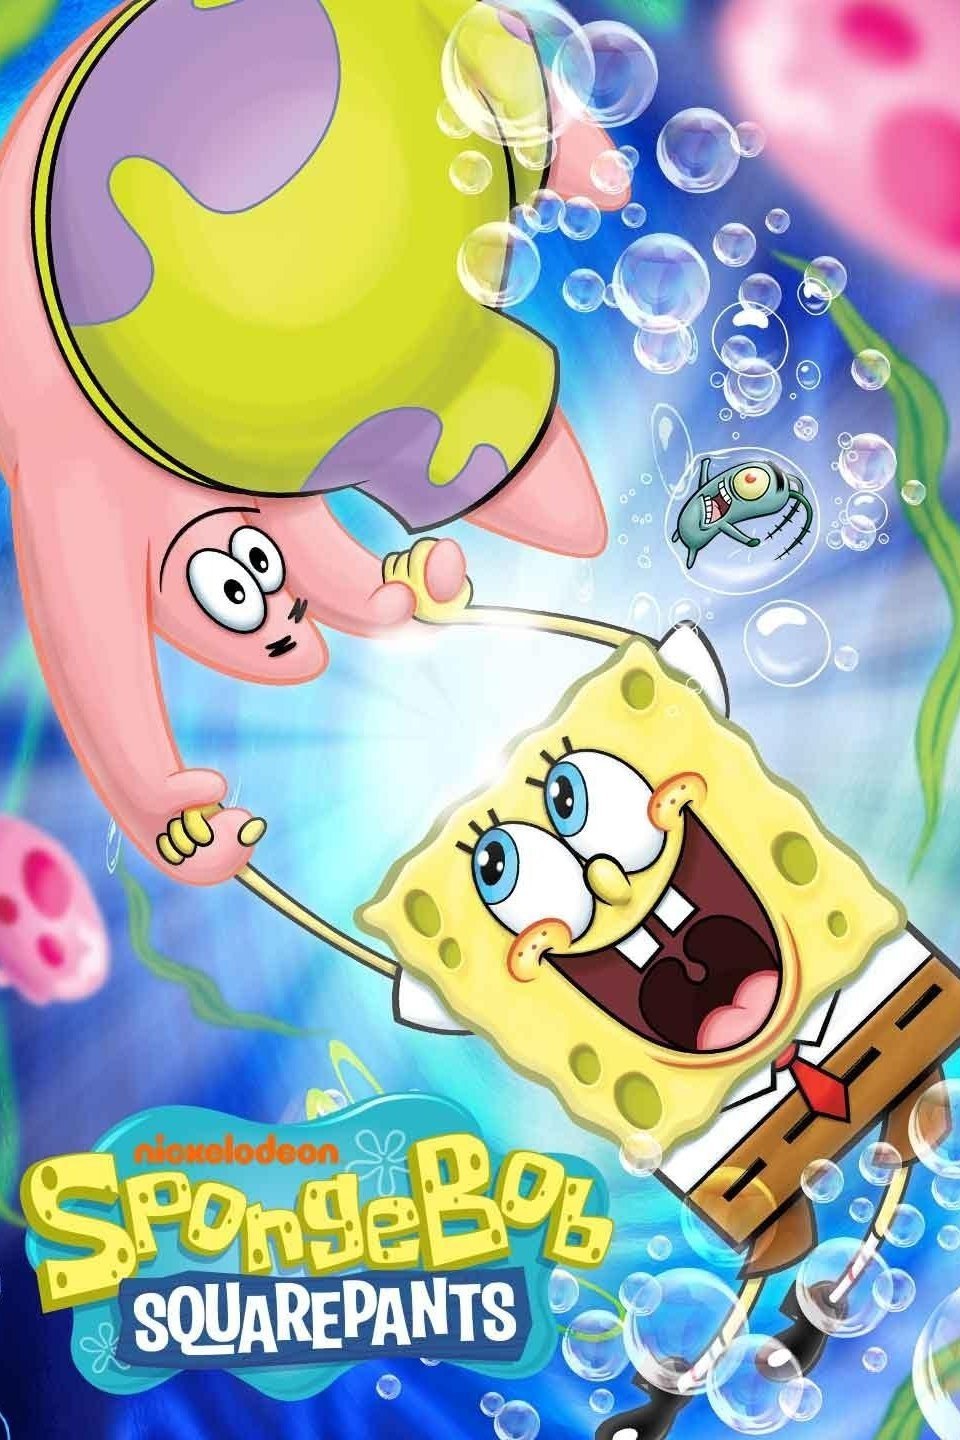 spongebob season 12 ep 2